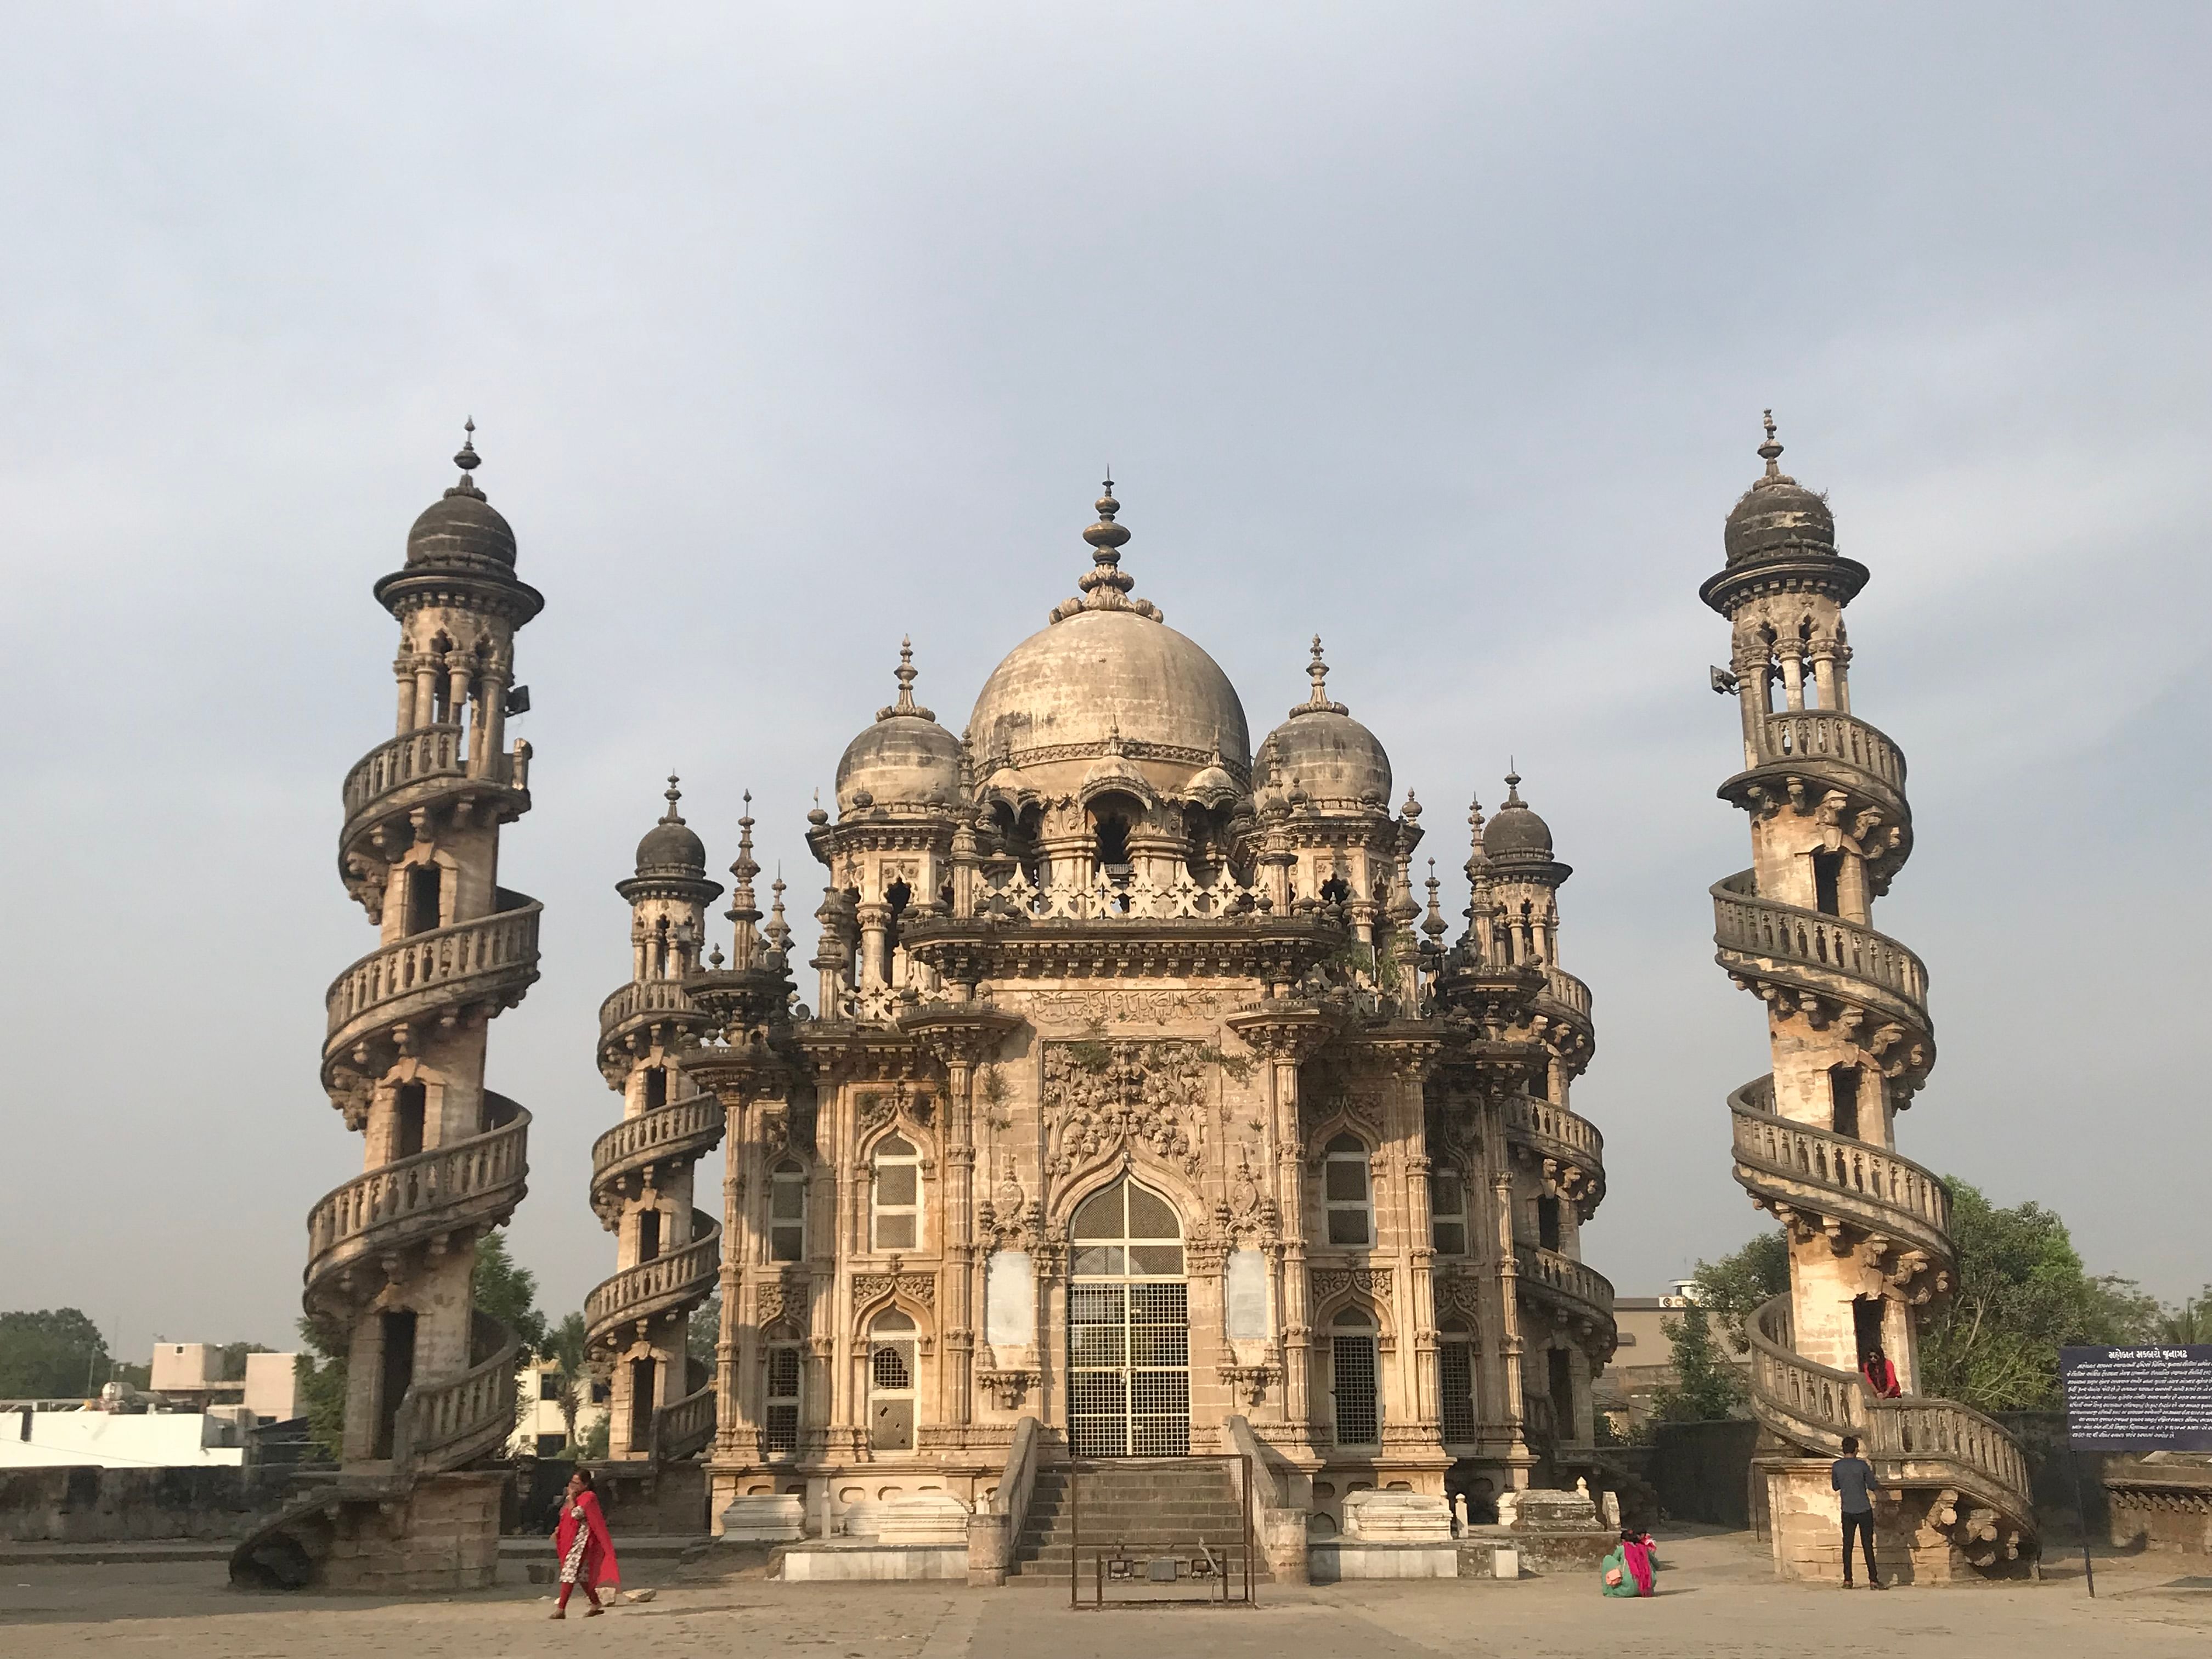  Junagadh has a wealth of monuments like the mausoleum of Vizier Bahauddinbhai Hasainbhai